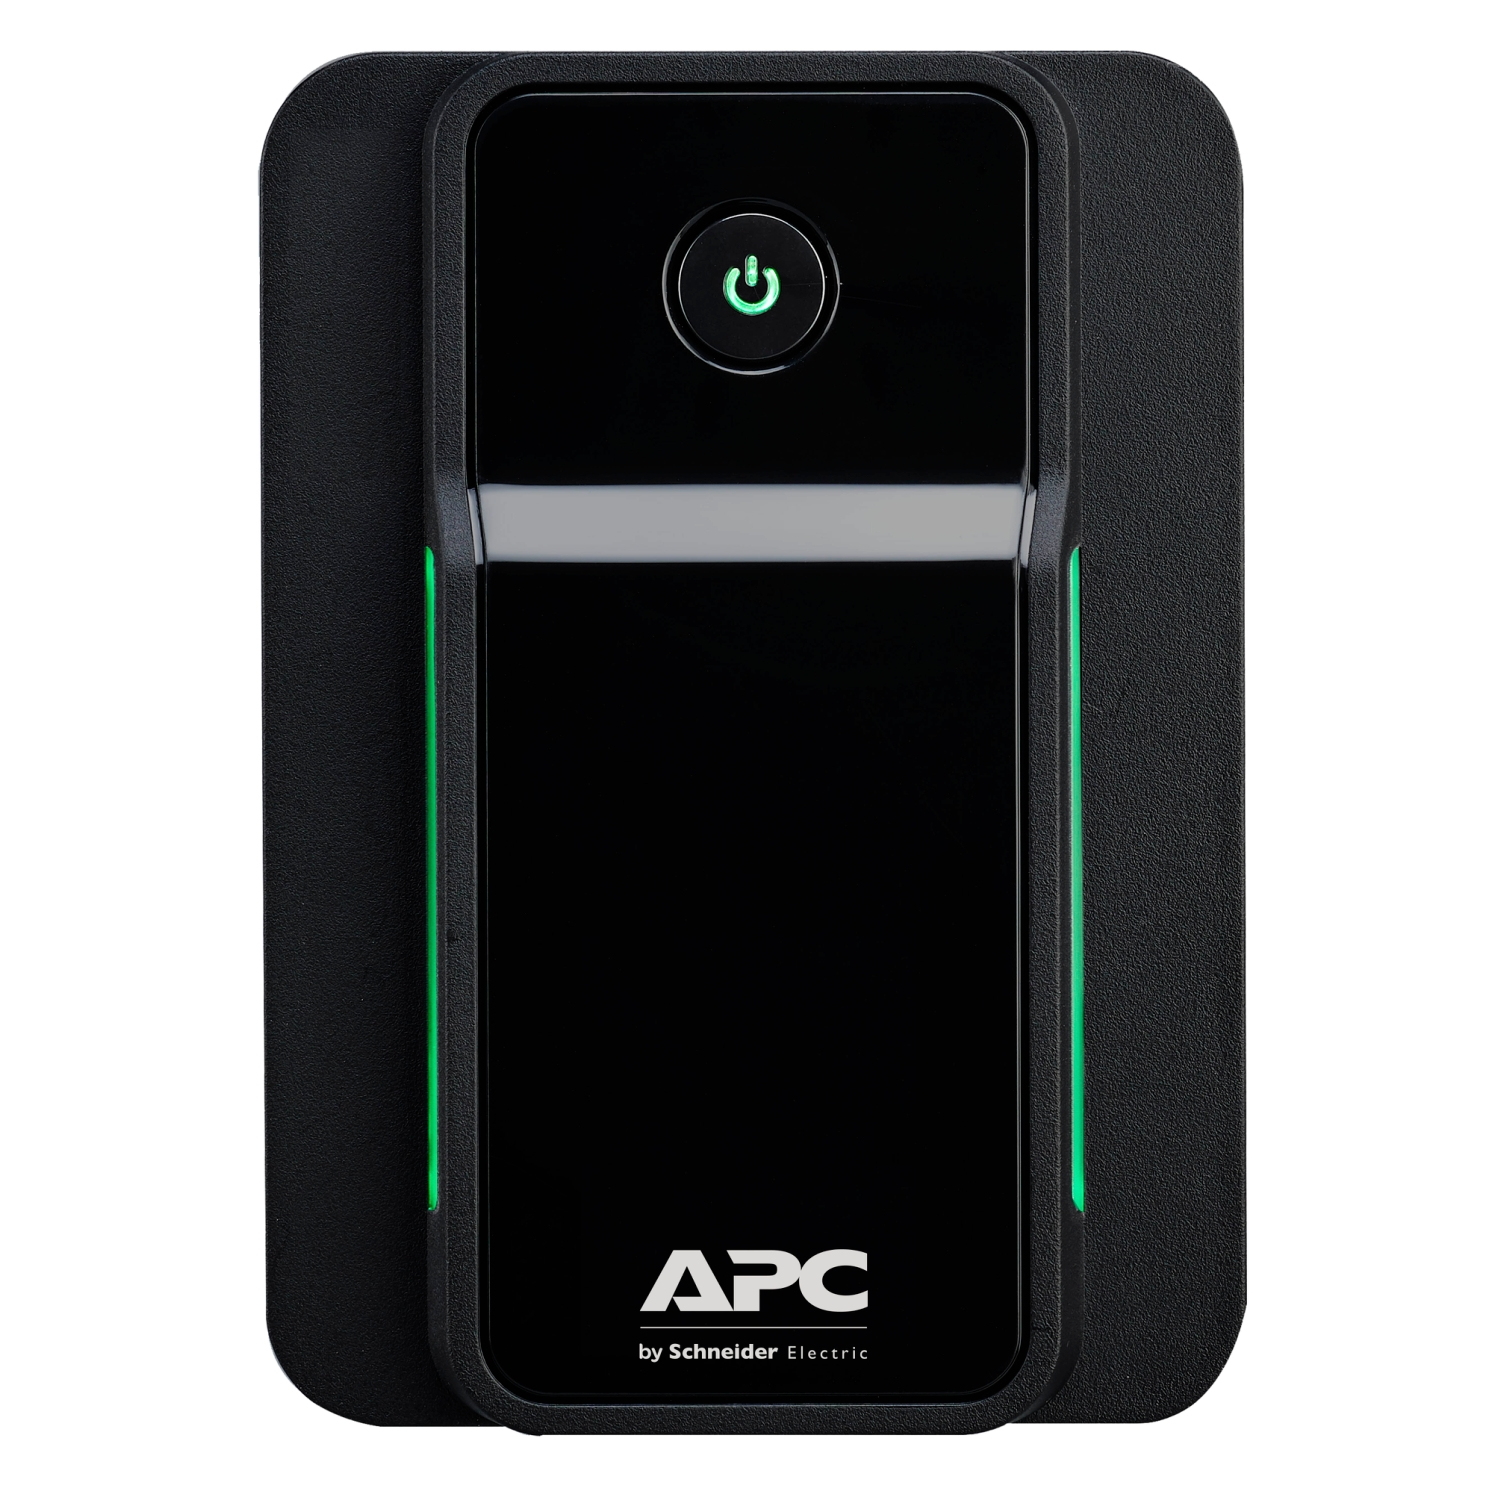 Apc APC Back-UPS 500VA,300 W, 230V, AVR, IEC Sockets BX500MI